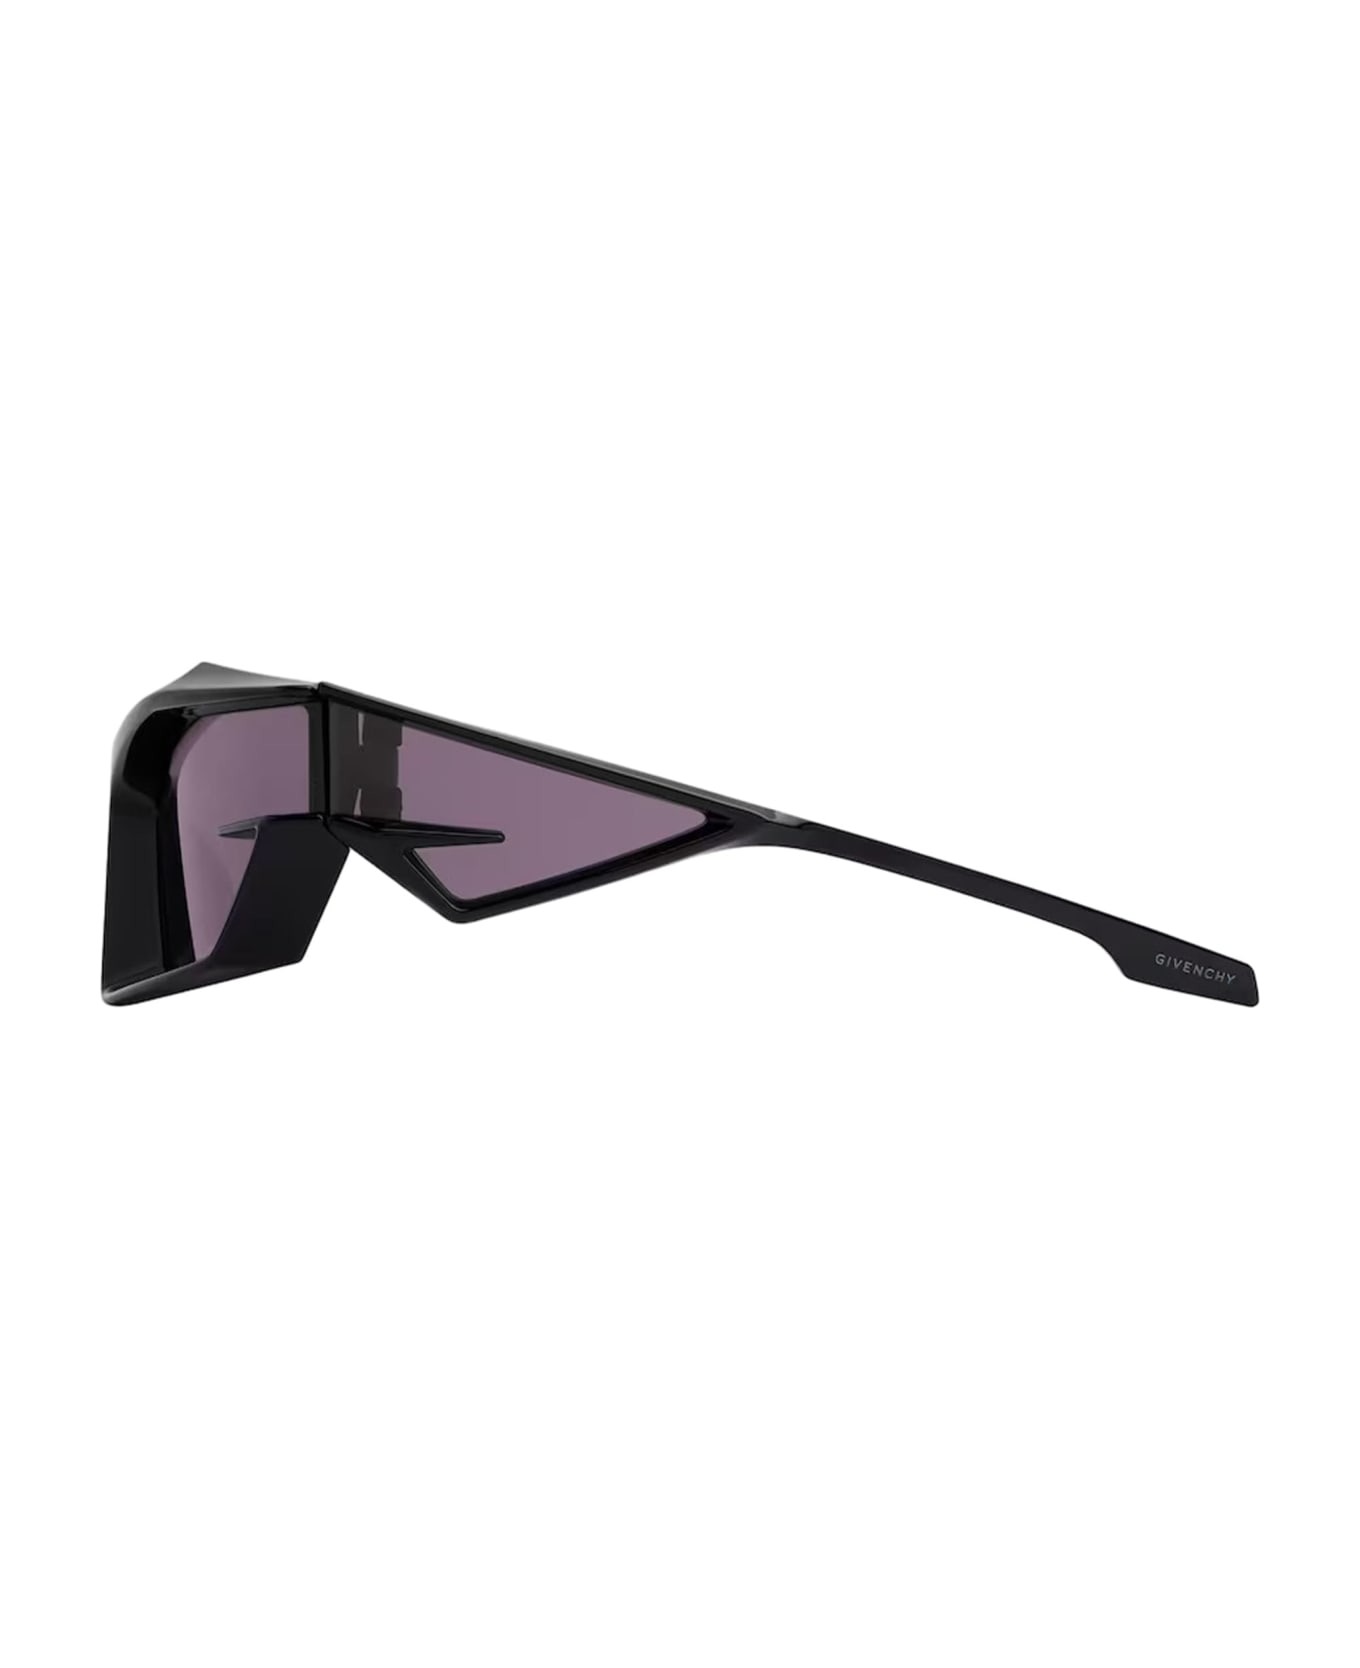 Givenchy Eyewear Giv Cut - Shiny Black Sunglasses - shiny black